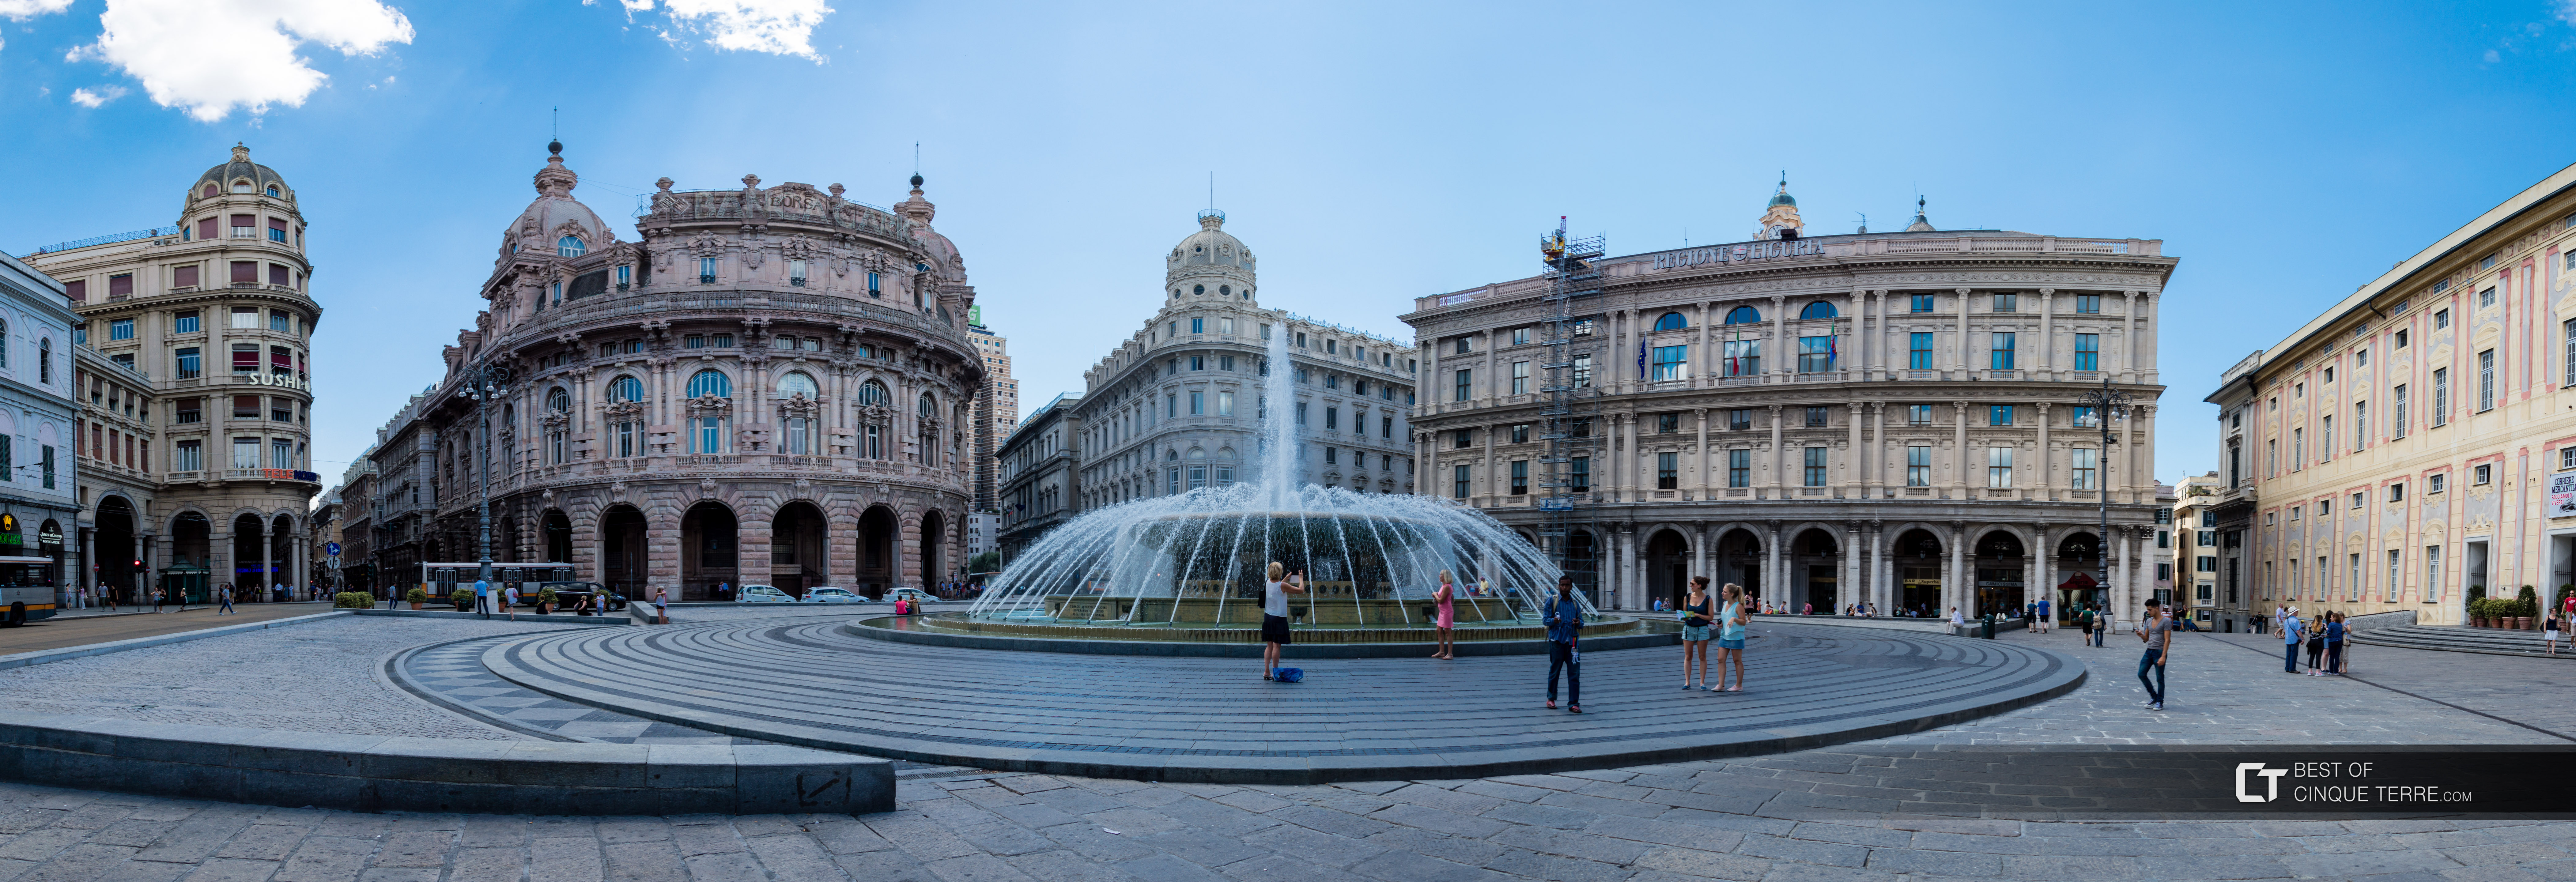 Piazza De Ferrari, Genoa, Italy